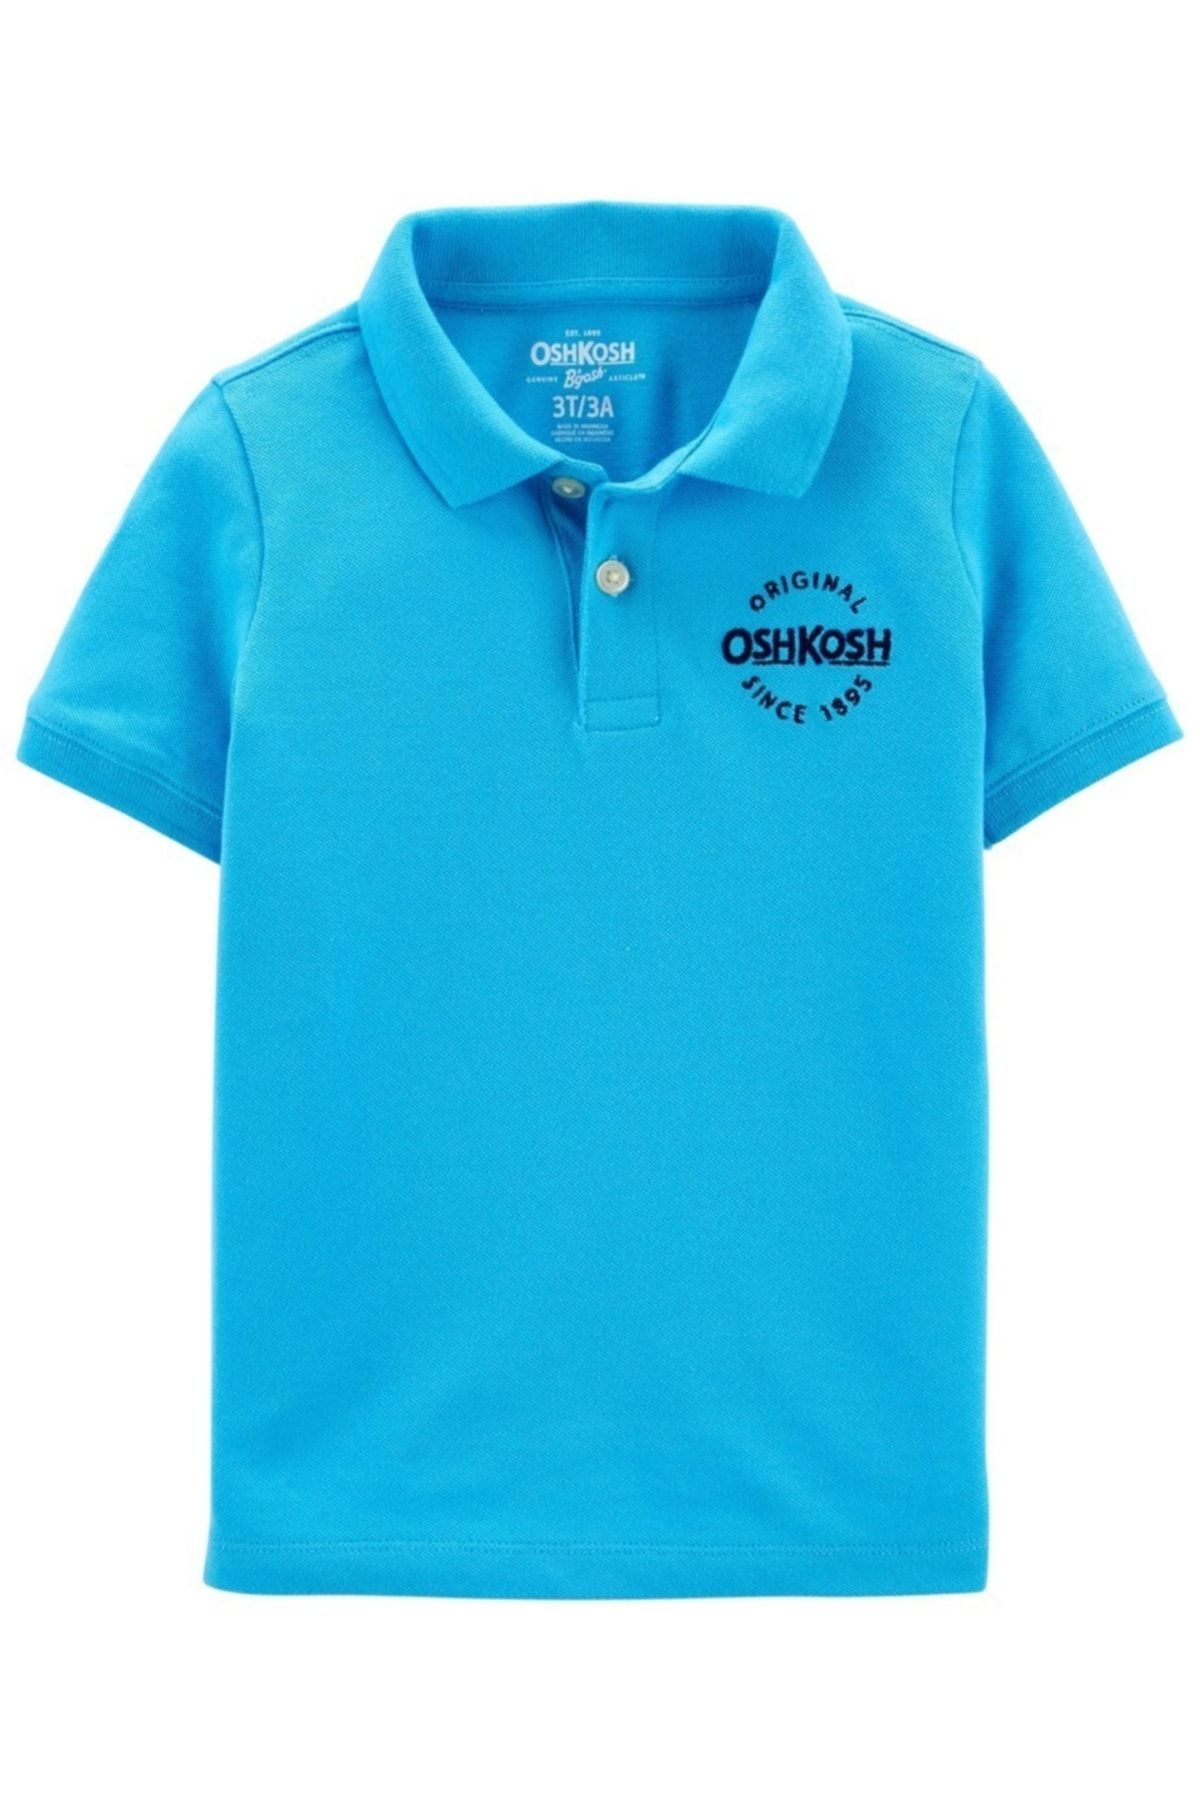 Oshkosh B’gosh Küçük Erkek Çocuk Kısa Kollu Tshirt Polo Yaka Mavi